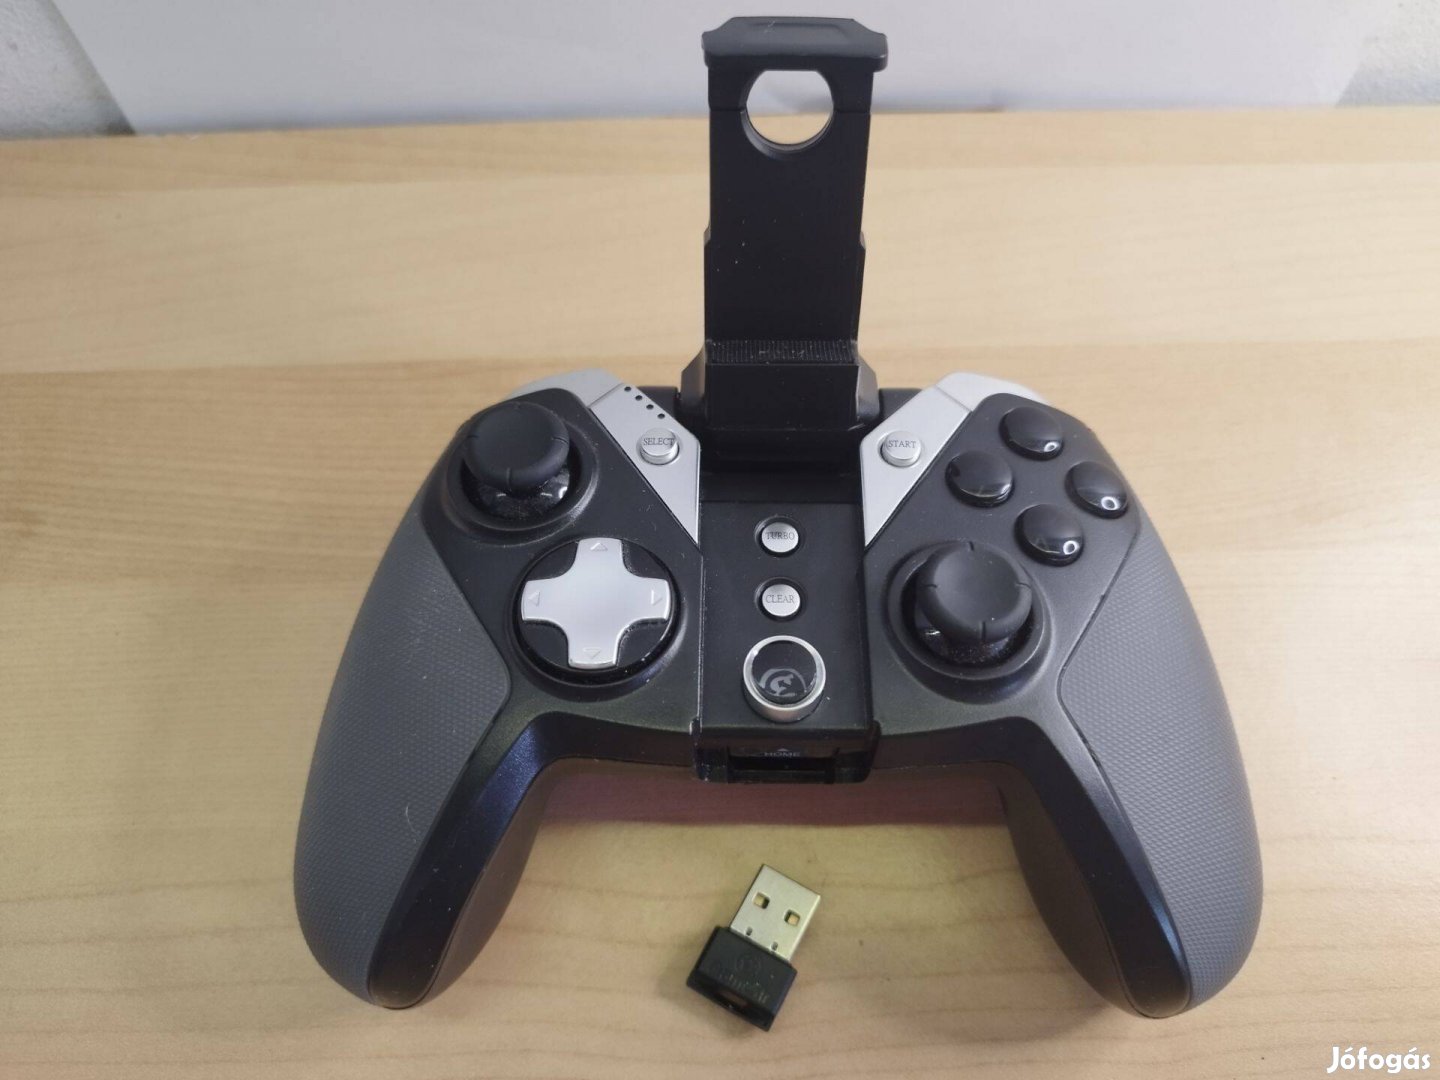 Gamesir G4s kontroller, joystick eladó alkatrésznek